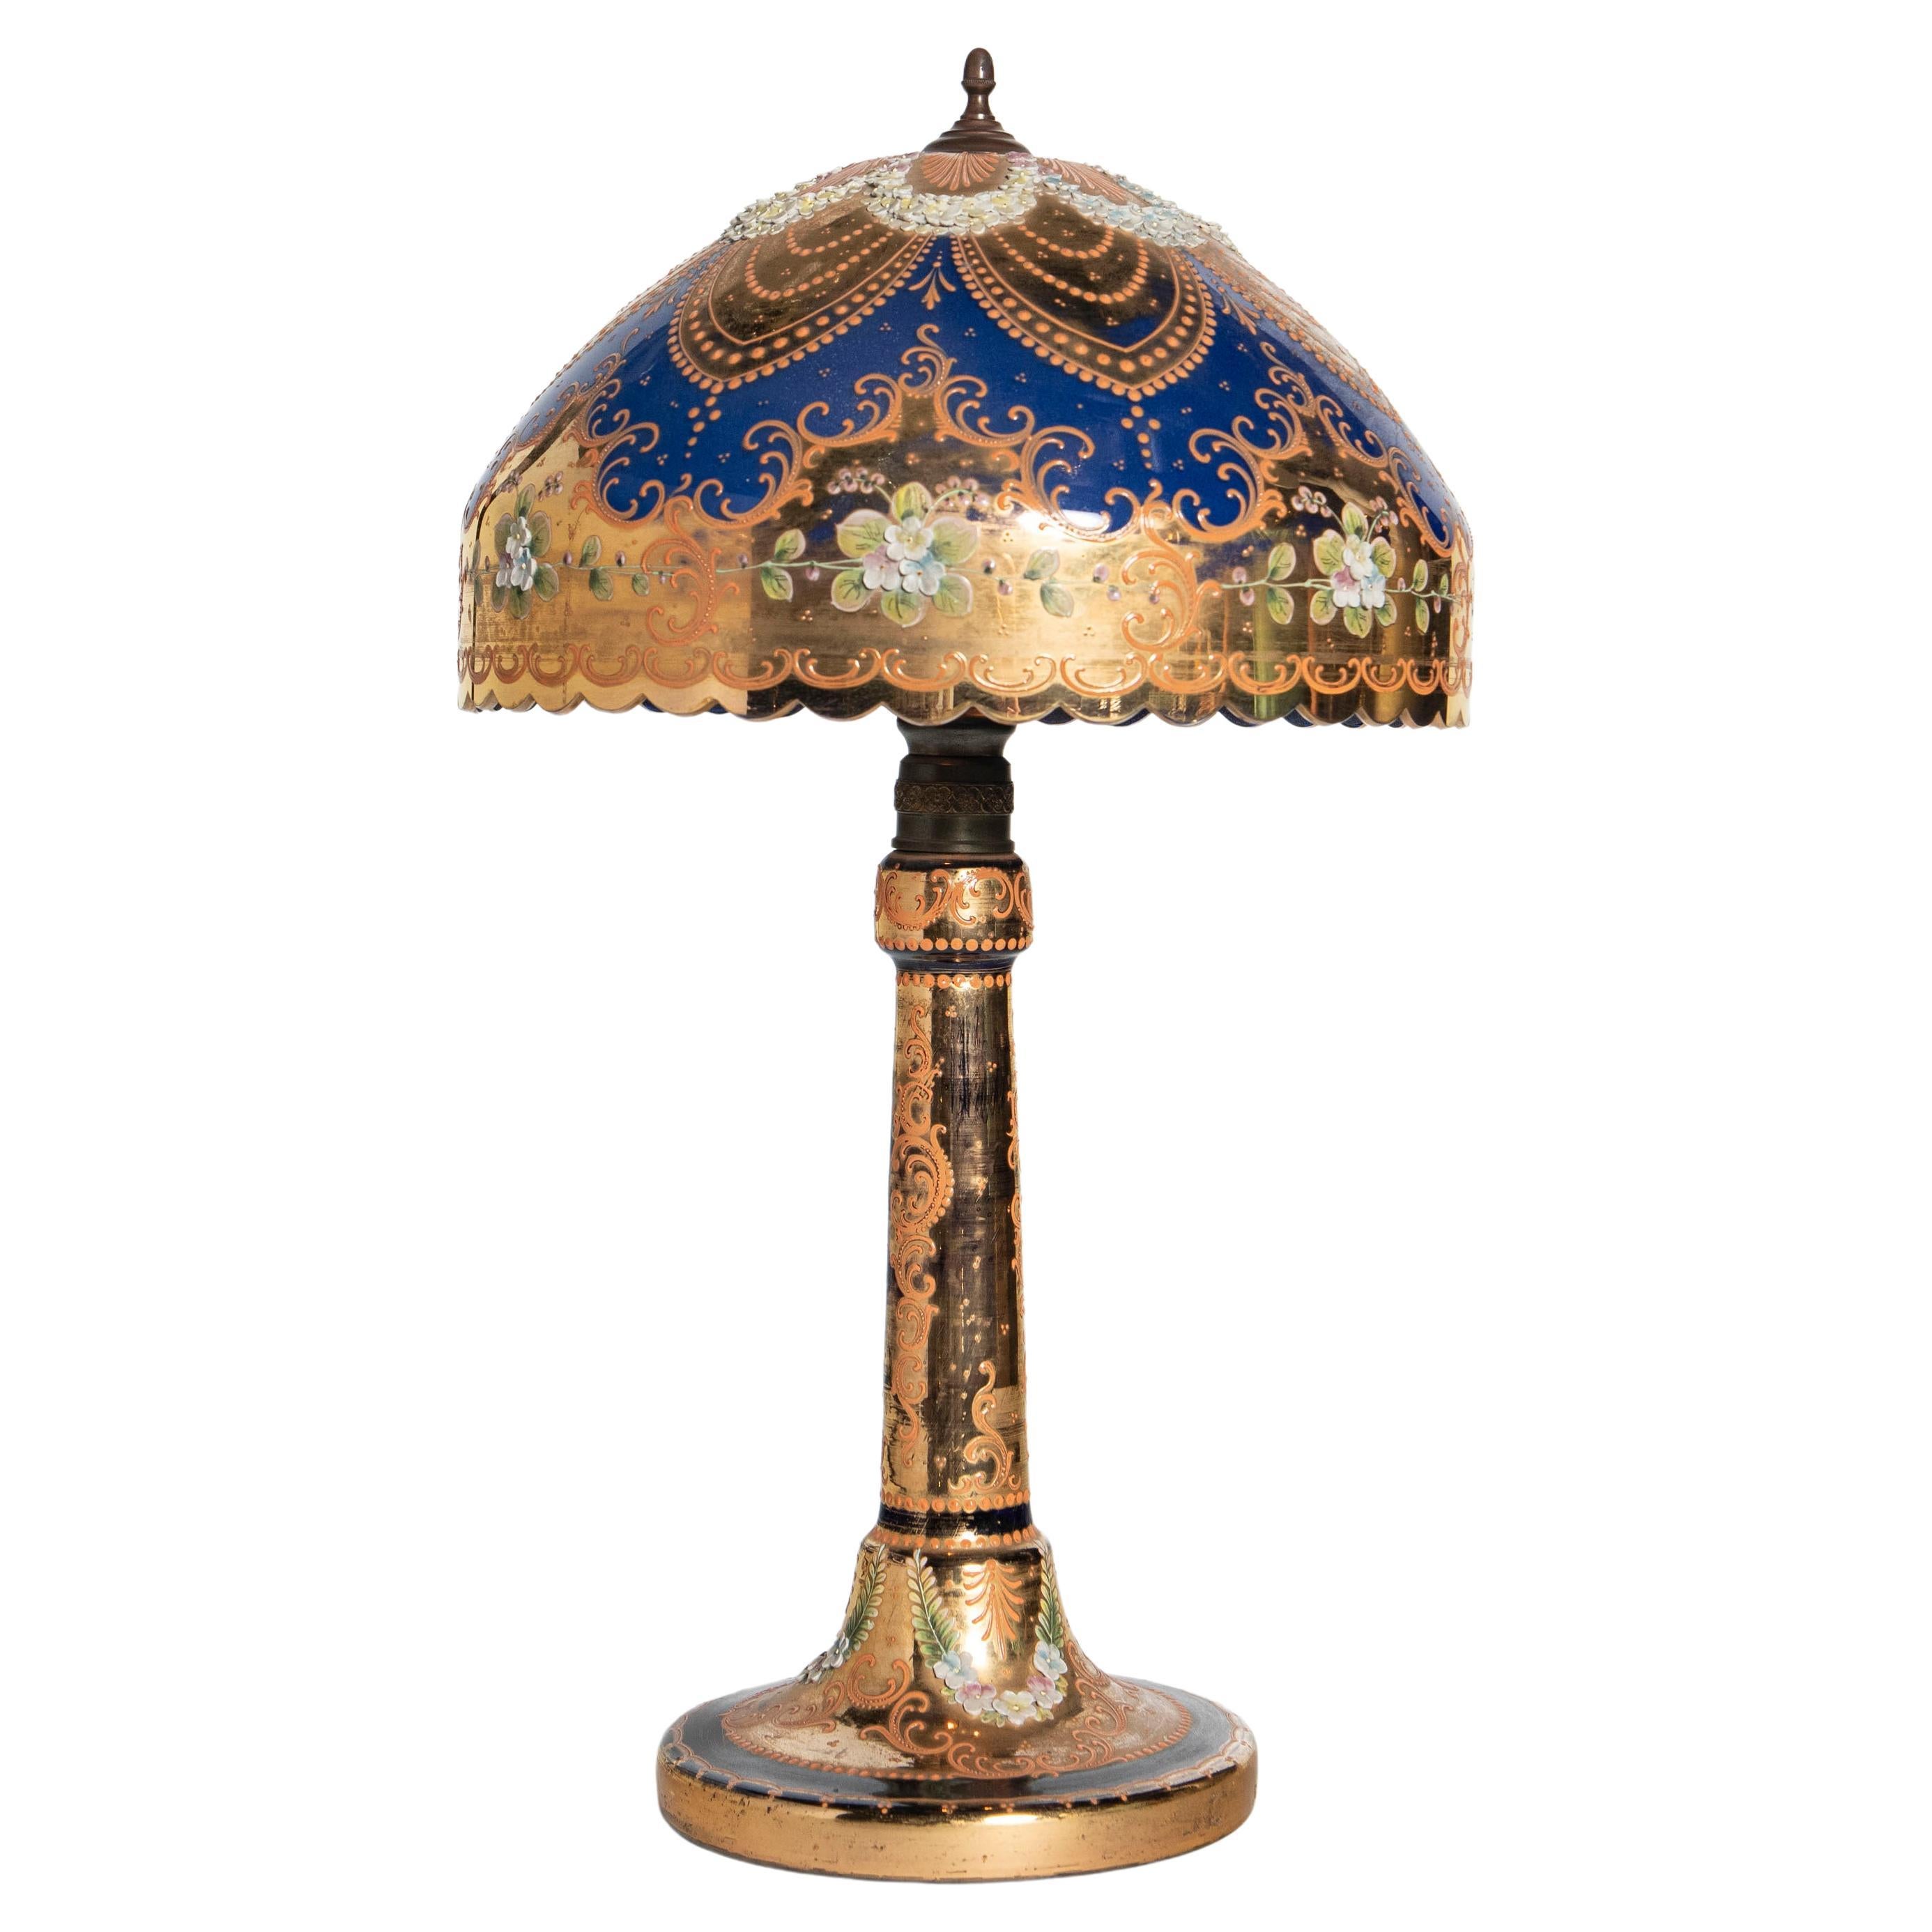 Tischlampe aus Muranoglas, Gold und Emaille, Italien, frühes 20. Jahrhundert.